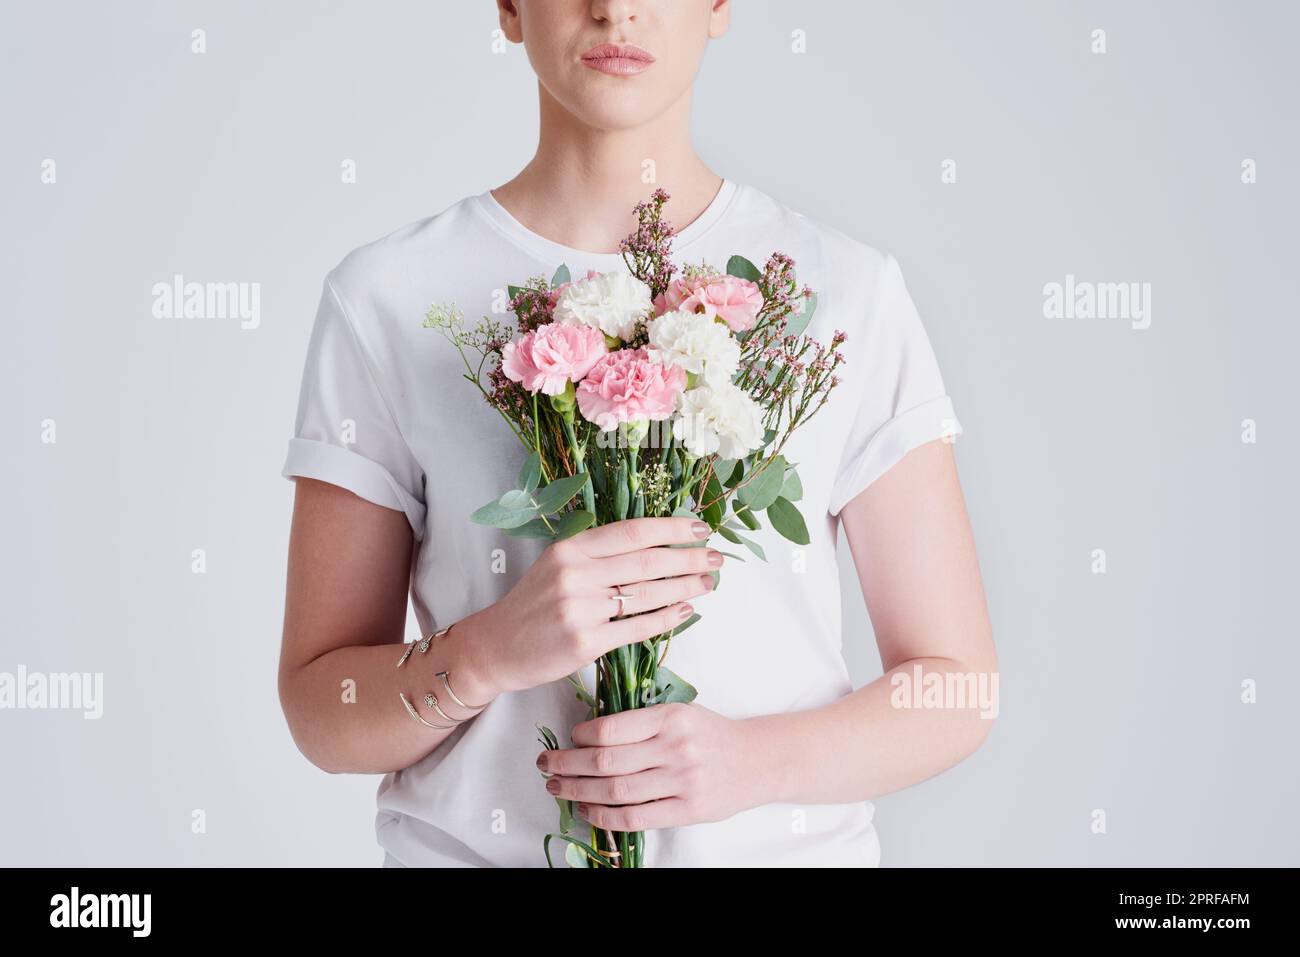 Leben Sie frei wie Blumen in der Natur. Studioaufnahme einer nicht erkennbaren Frau, die einen Blumenstrauß vor einem grauen Hintergrund hält. Stockfoto